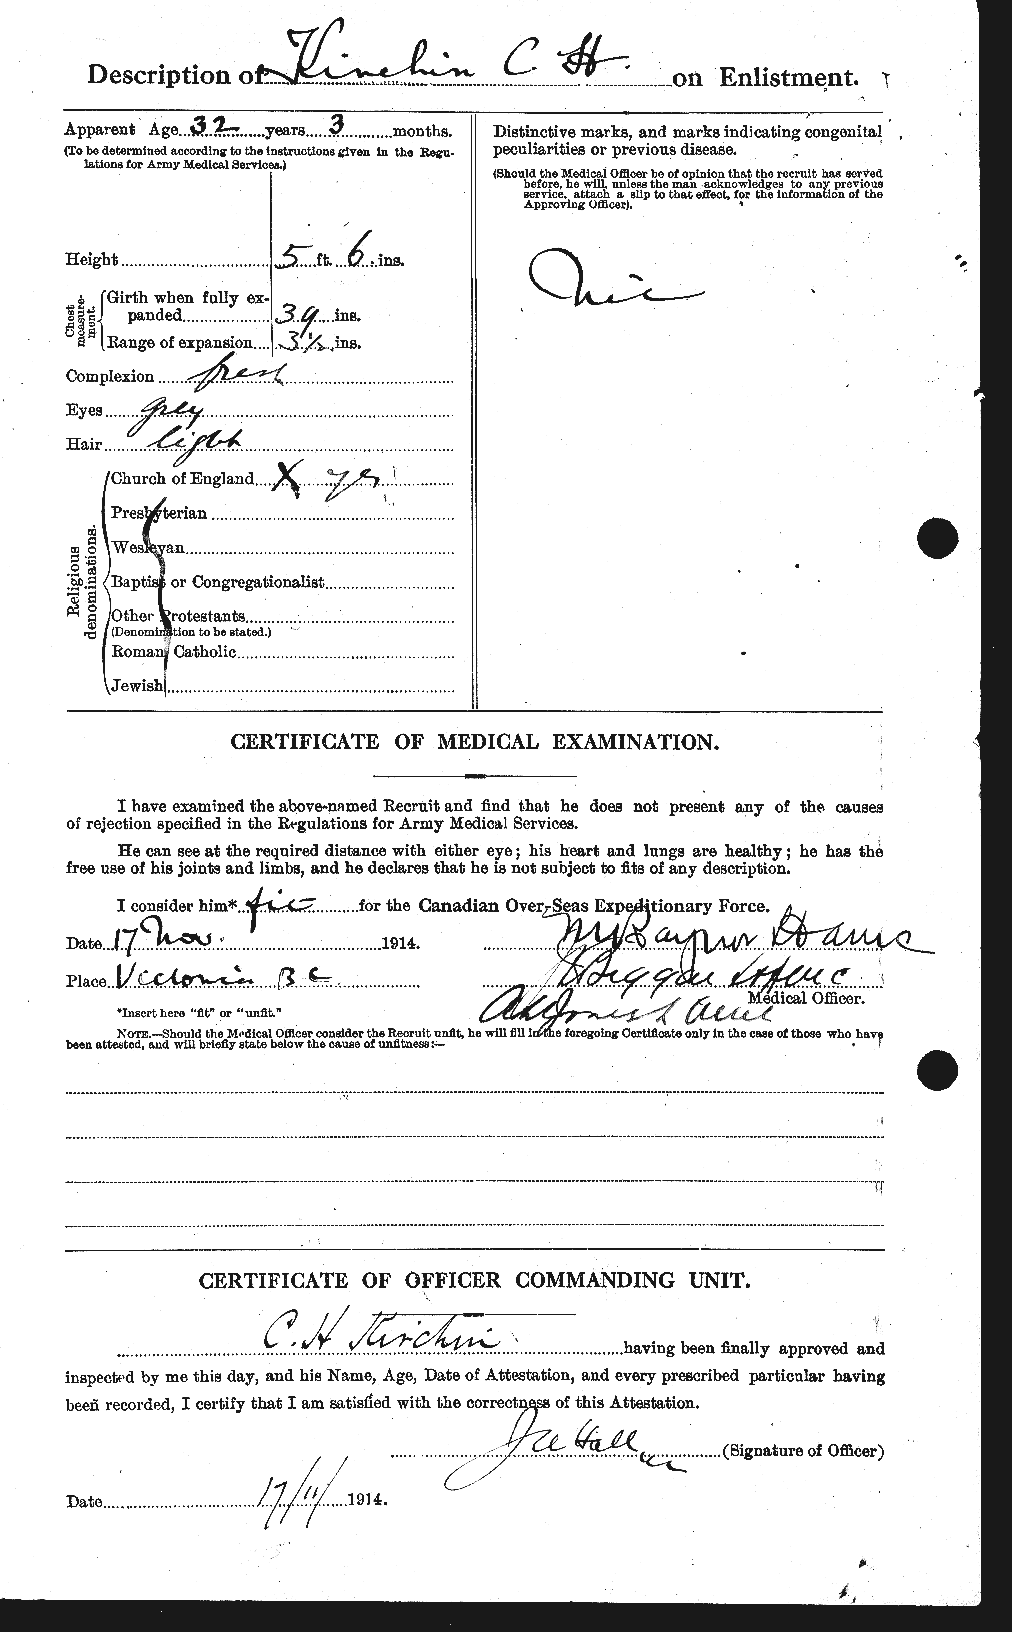 Dossiers du Personnel de la Première Guerre mondiale - CEC 437314b